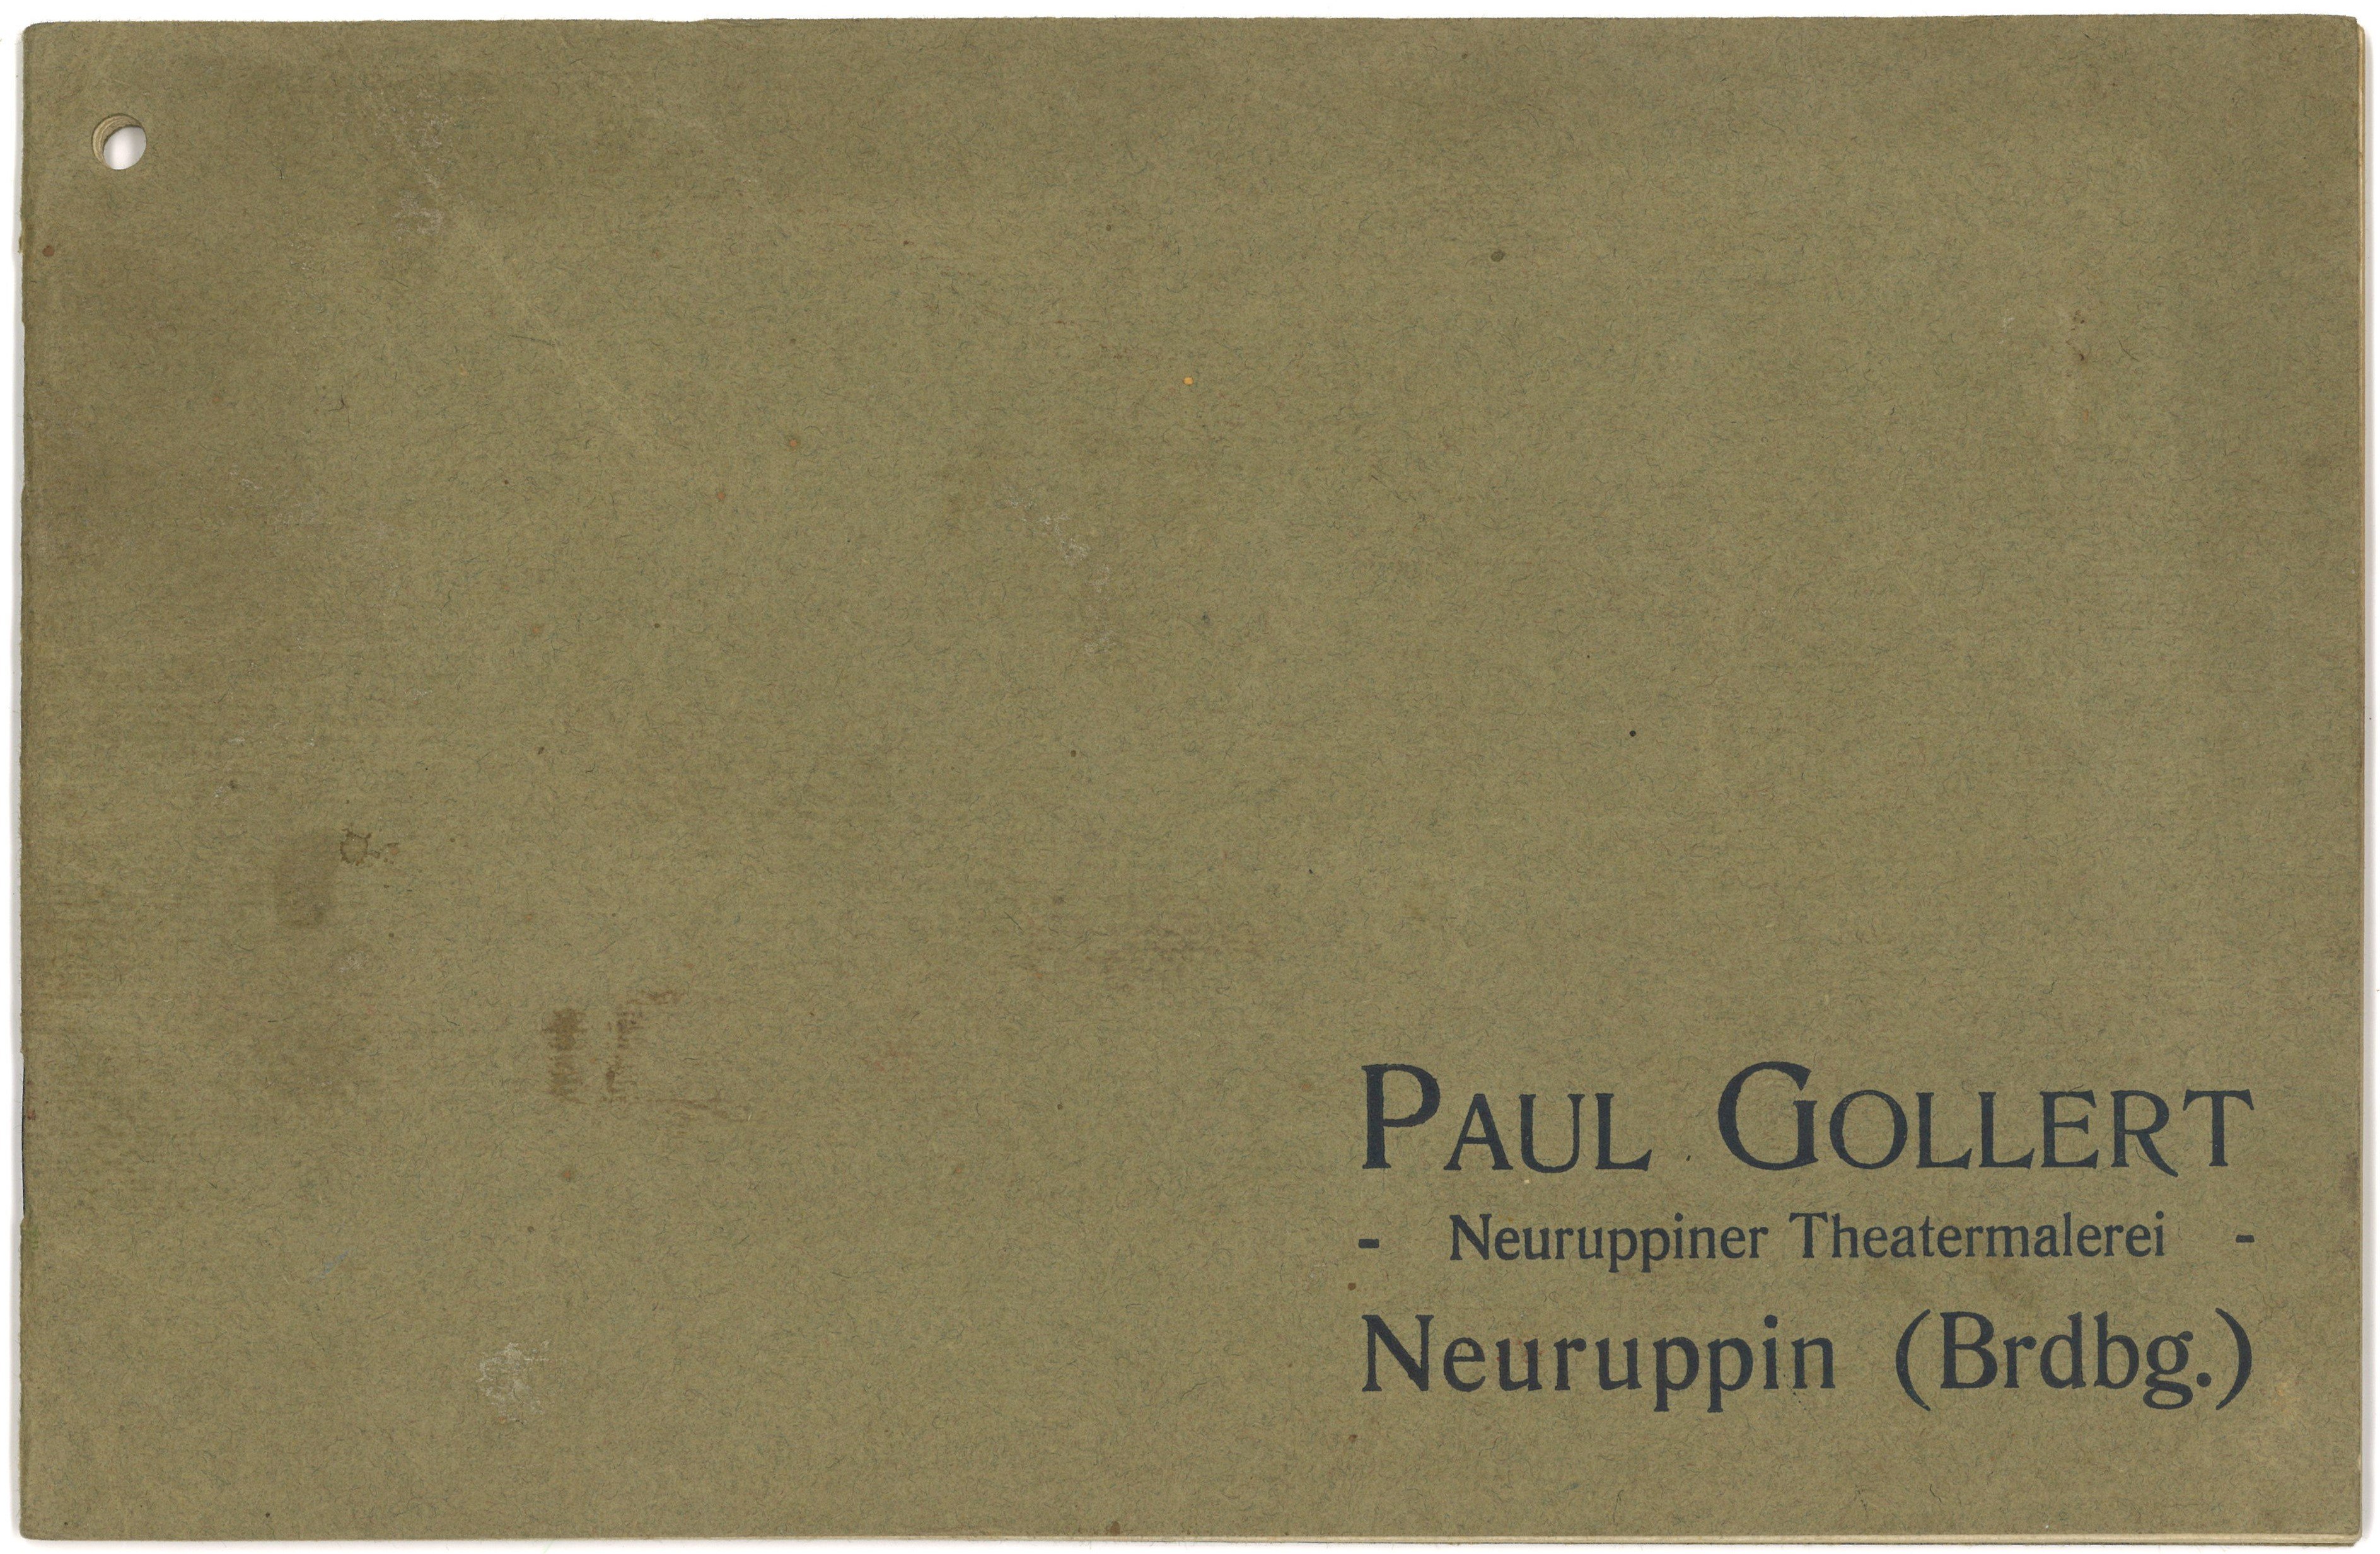 Paul Gollert, Neuruppiner Theatermalerei, Neuruppin: Katalog (Landesgeschichtliche Vereinigung für die Mark Brandenburg e.V., Archiv CC BY)